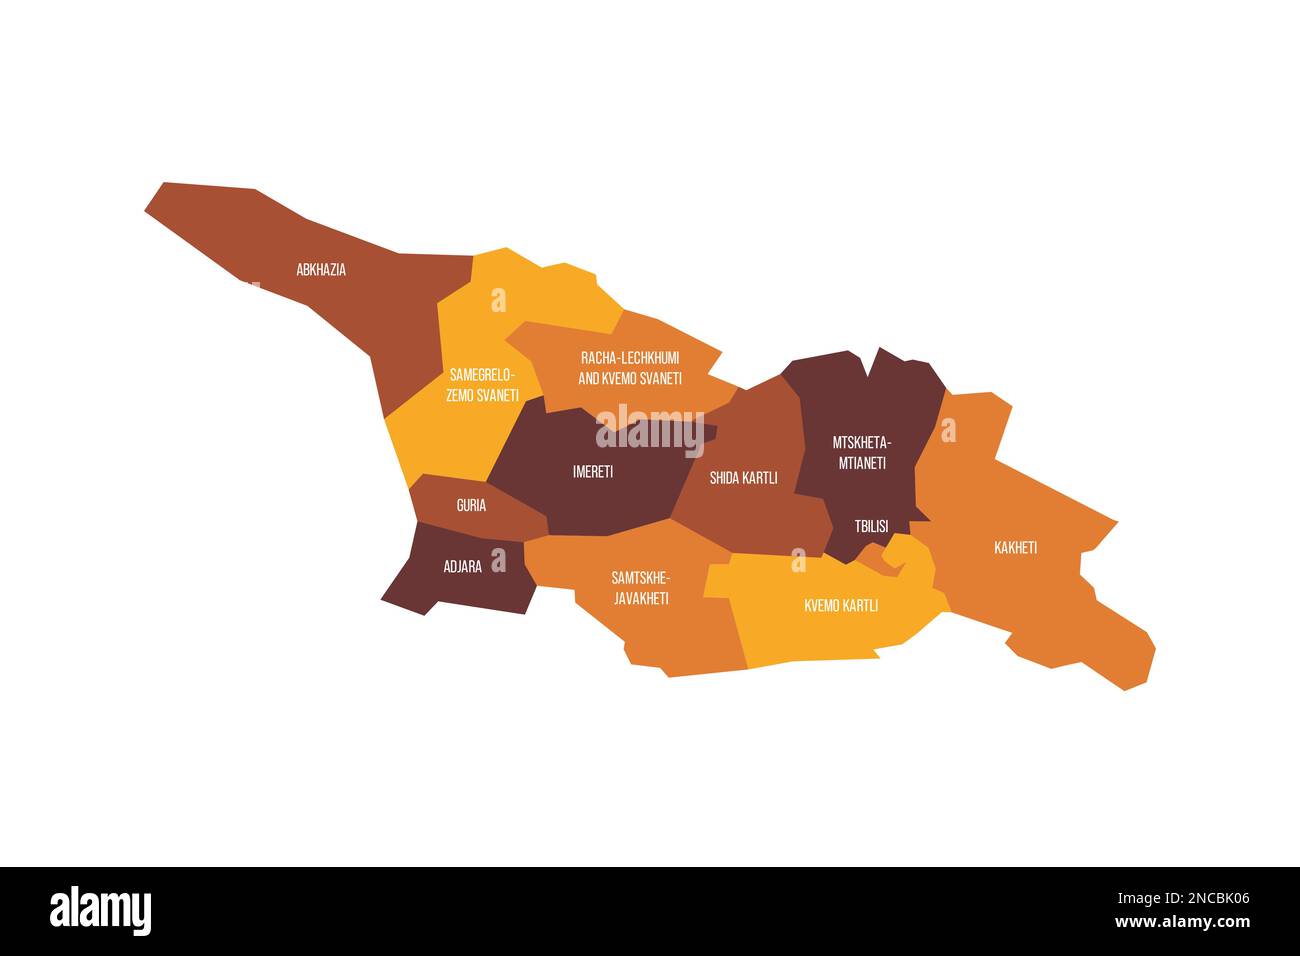 Georgia carta politica delle divisioni amministrative - regioni e repubbliche autonome di Abkhasia e Adjara. Mappa vettoriale piatta con etichette dei nomi. Schema colore marrone - arancione. Illustrazione Vettoriale